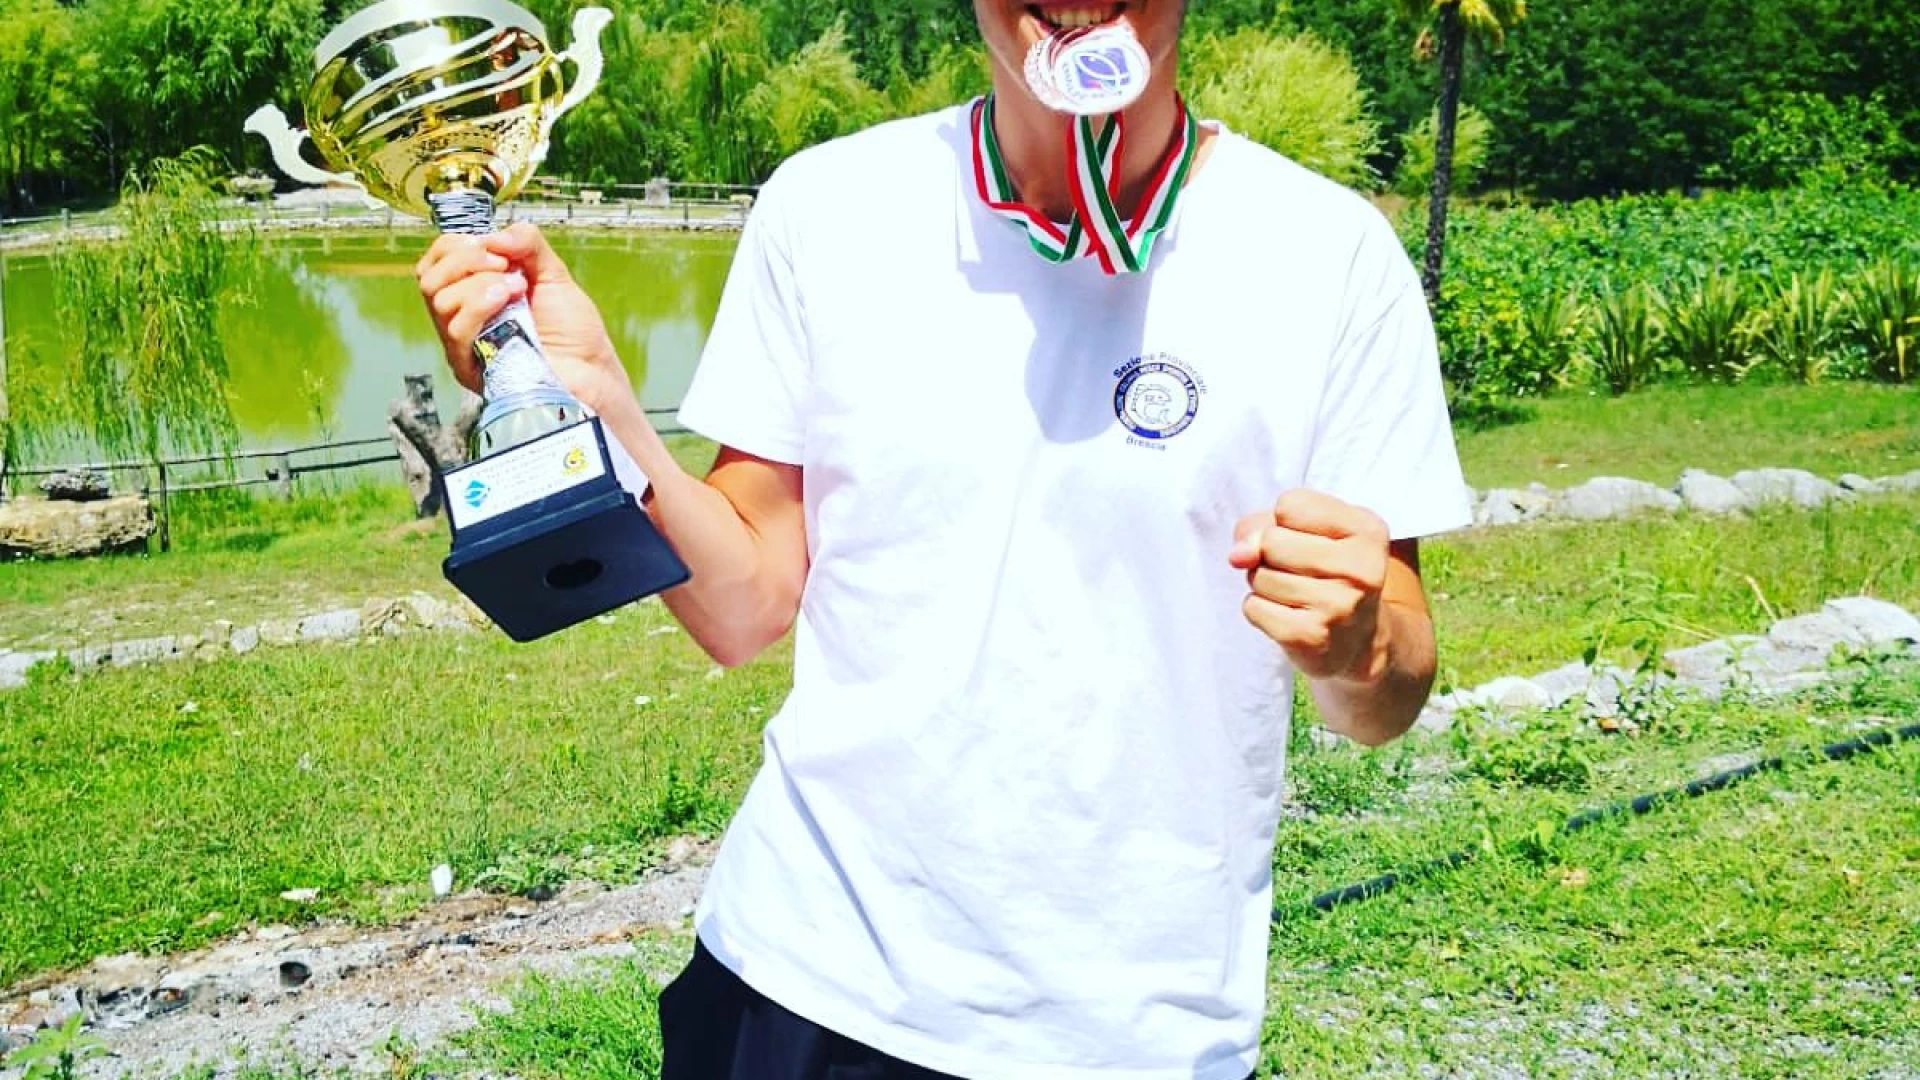 Pesca: nello spinning terzo posto assoluto per Federico Simeone al campionato italiano ENALPESCA.